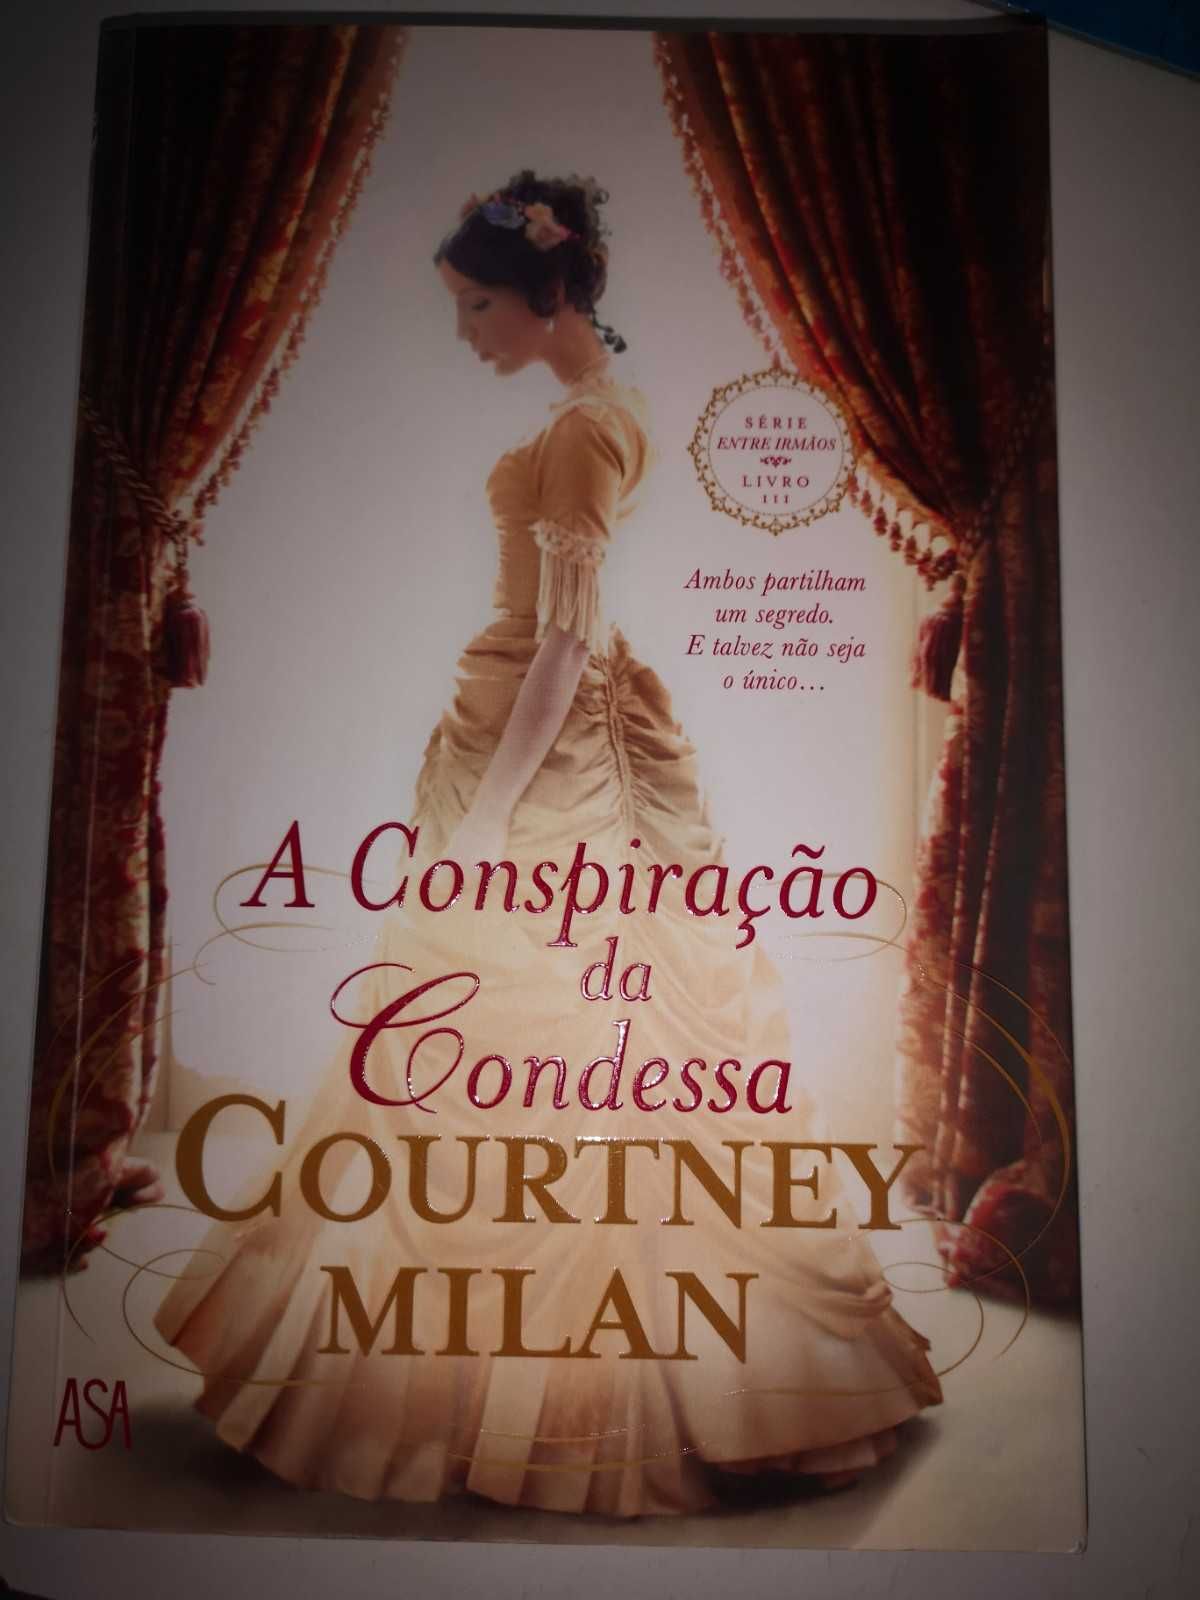 A Conspiração da Condessa, Courtney Milan